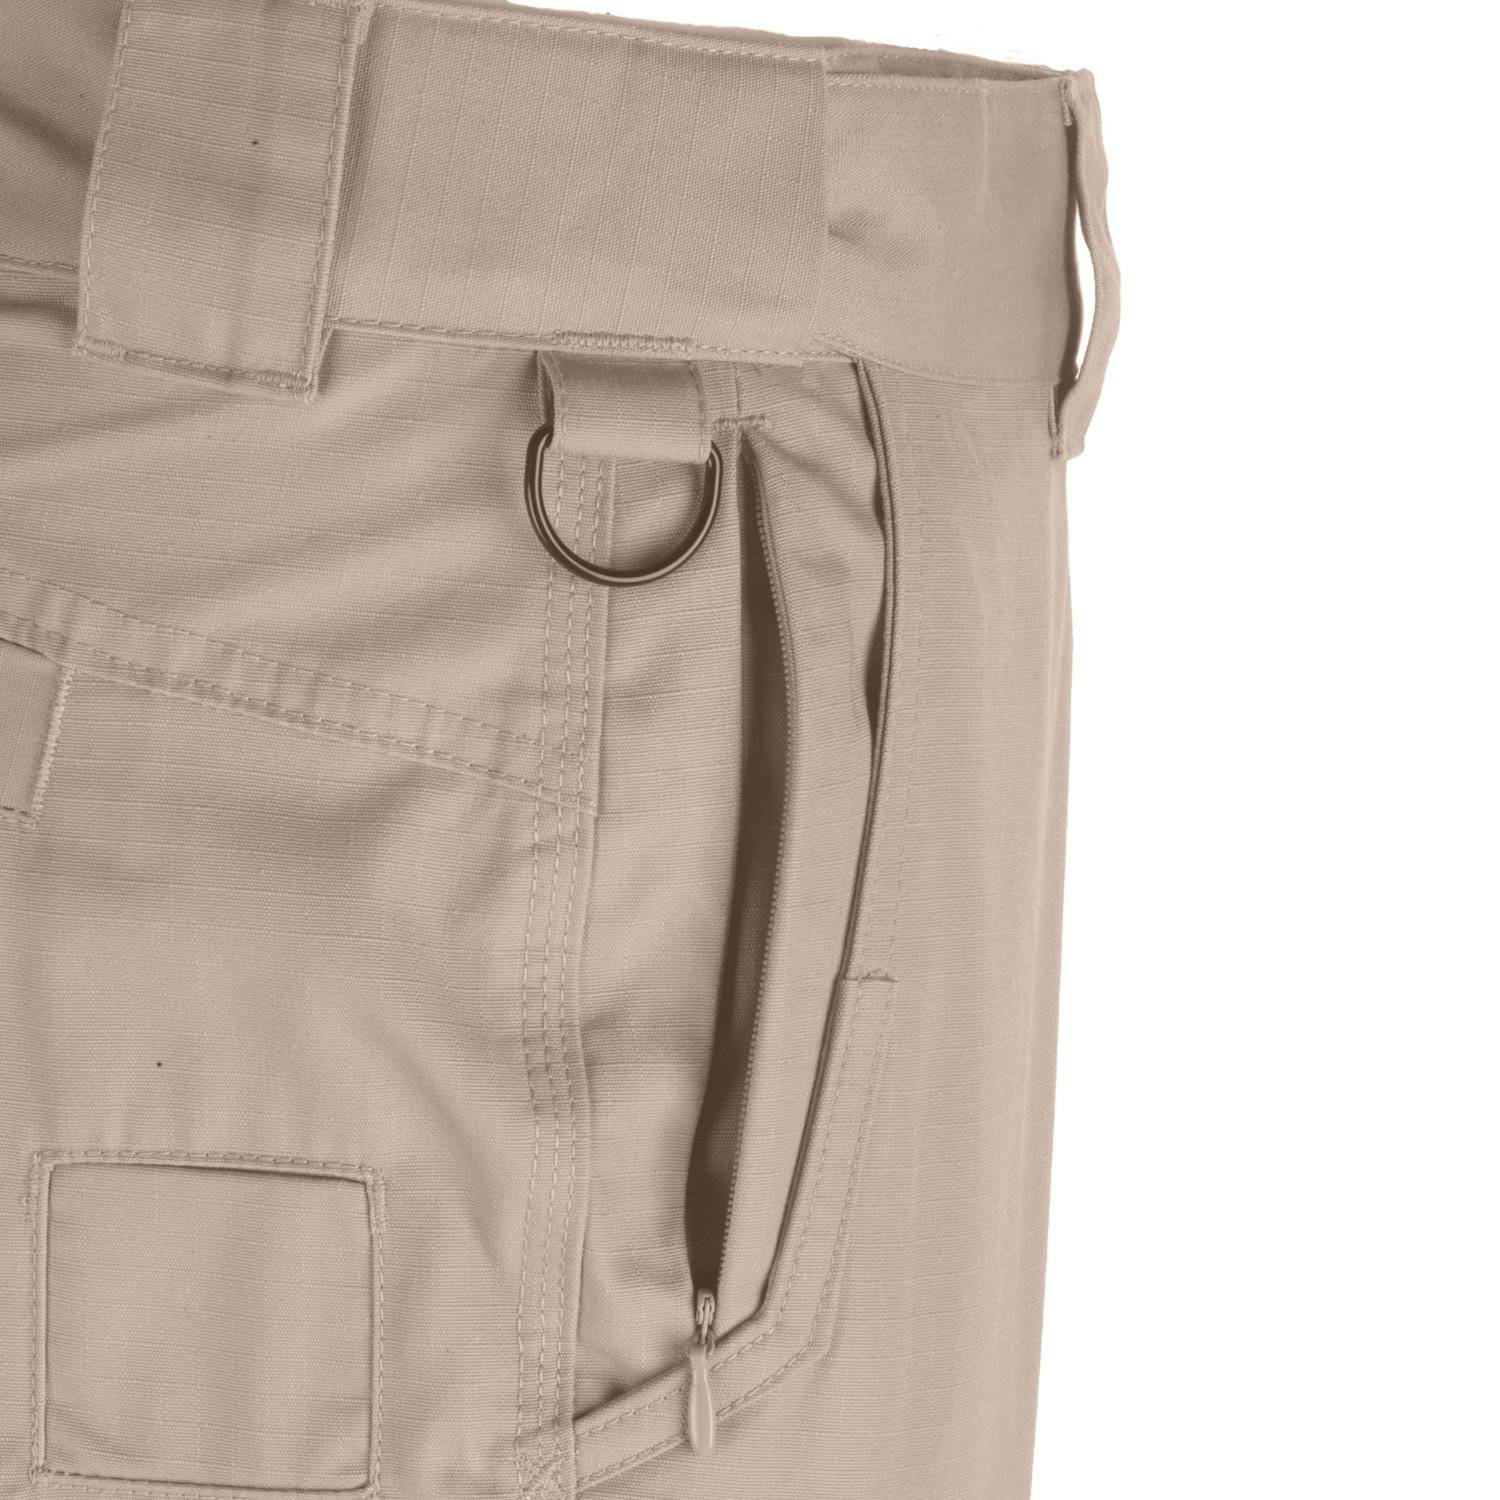 Galls Pro Women's G-Tac Tactical Pants